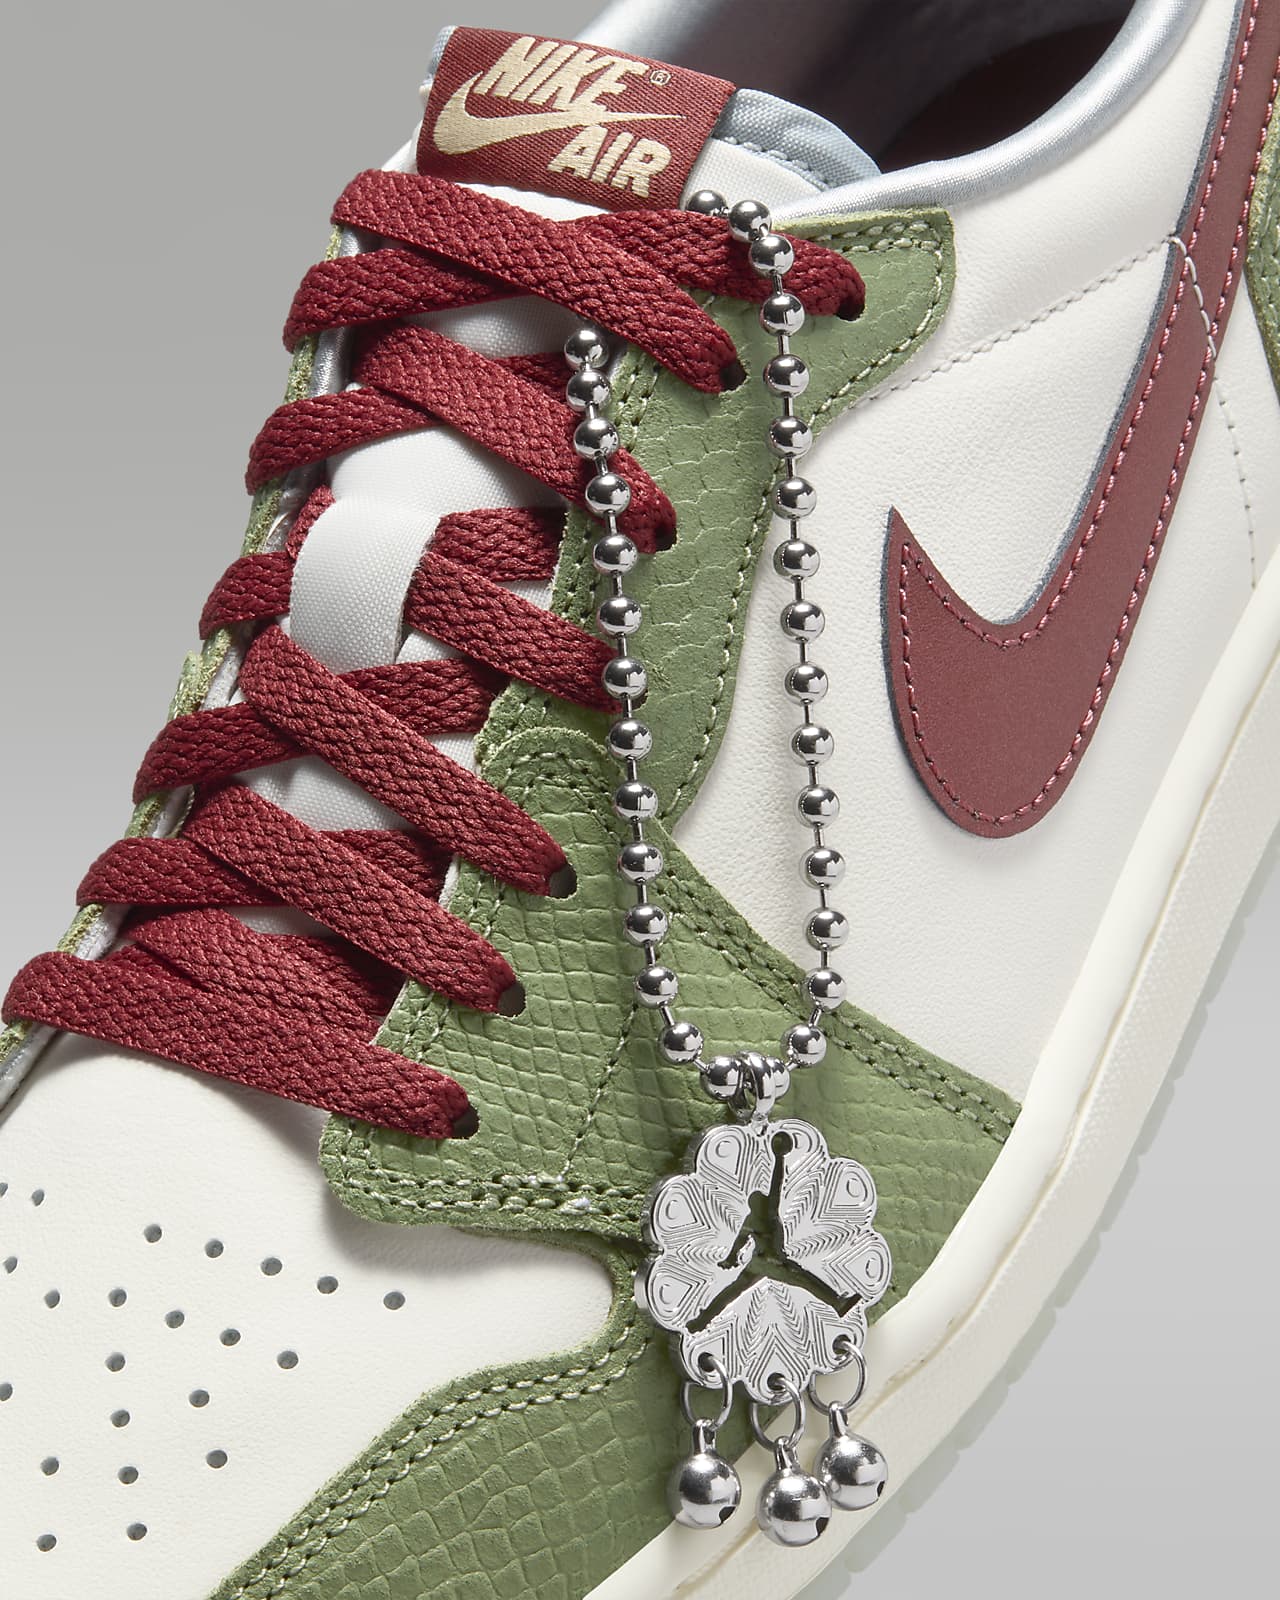 Nike Air Jordan 1 Low OG \